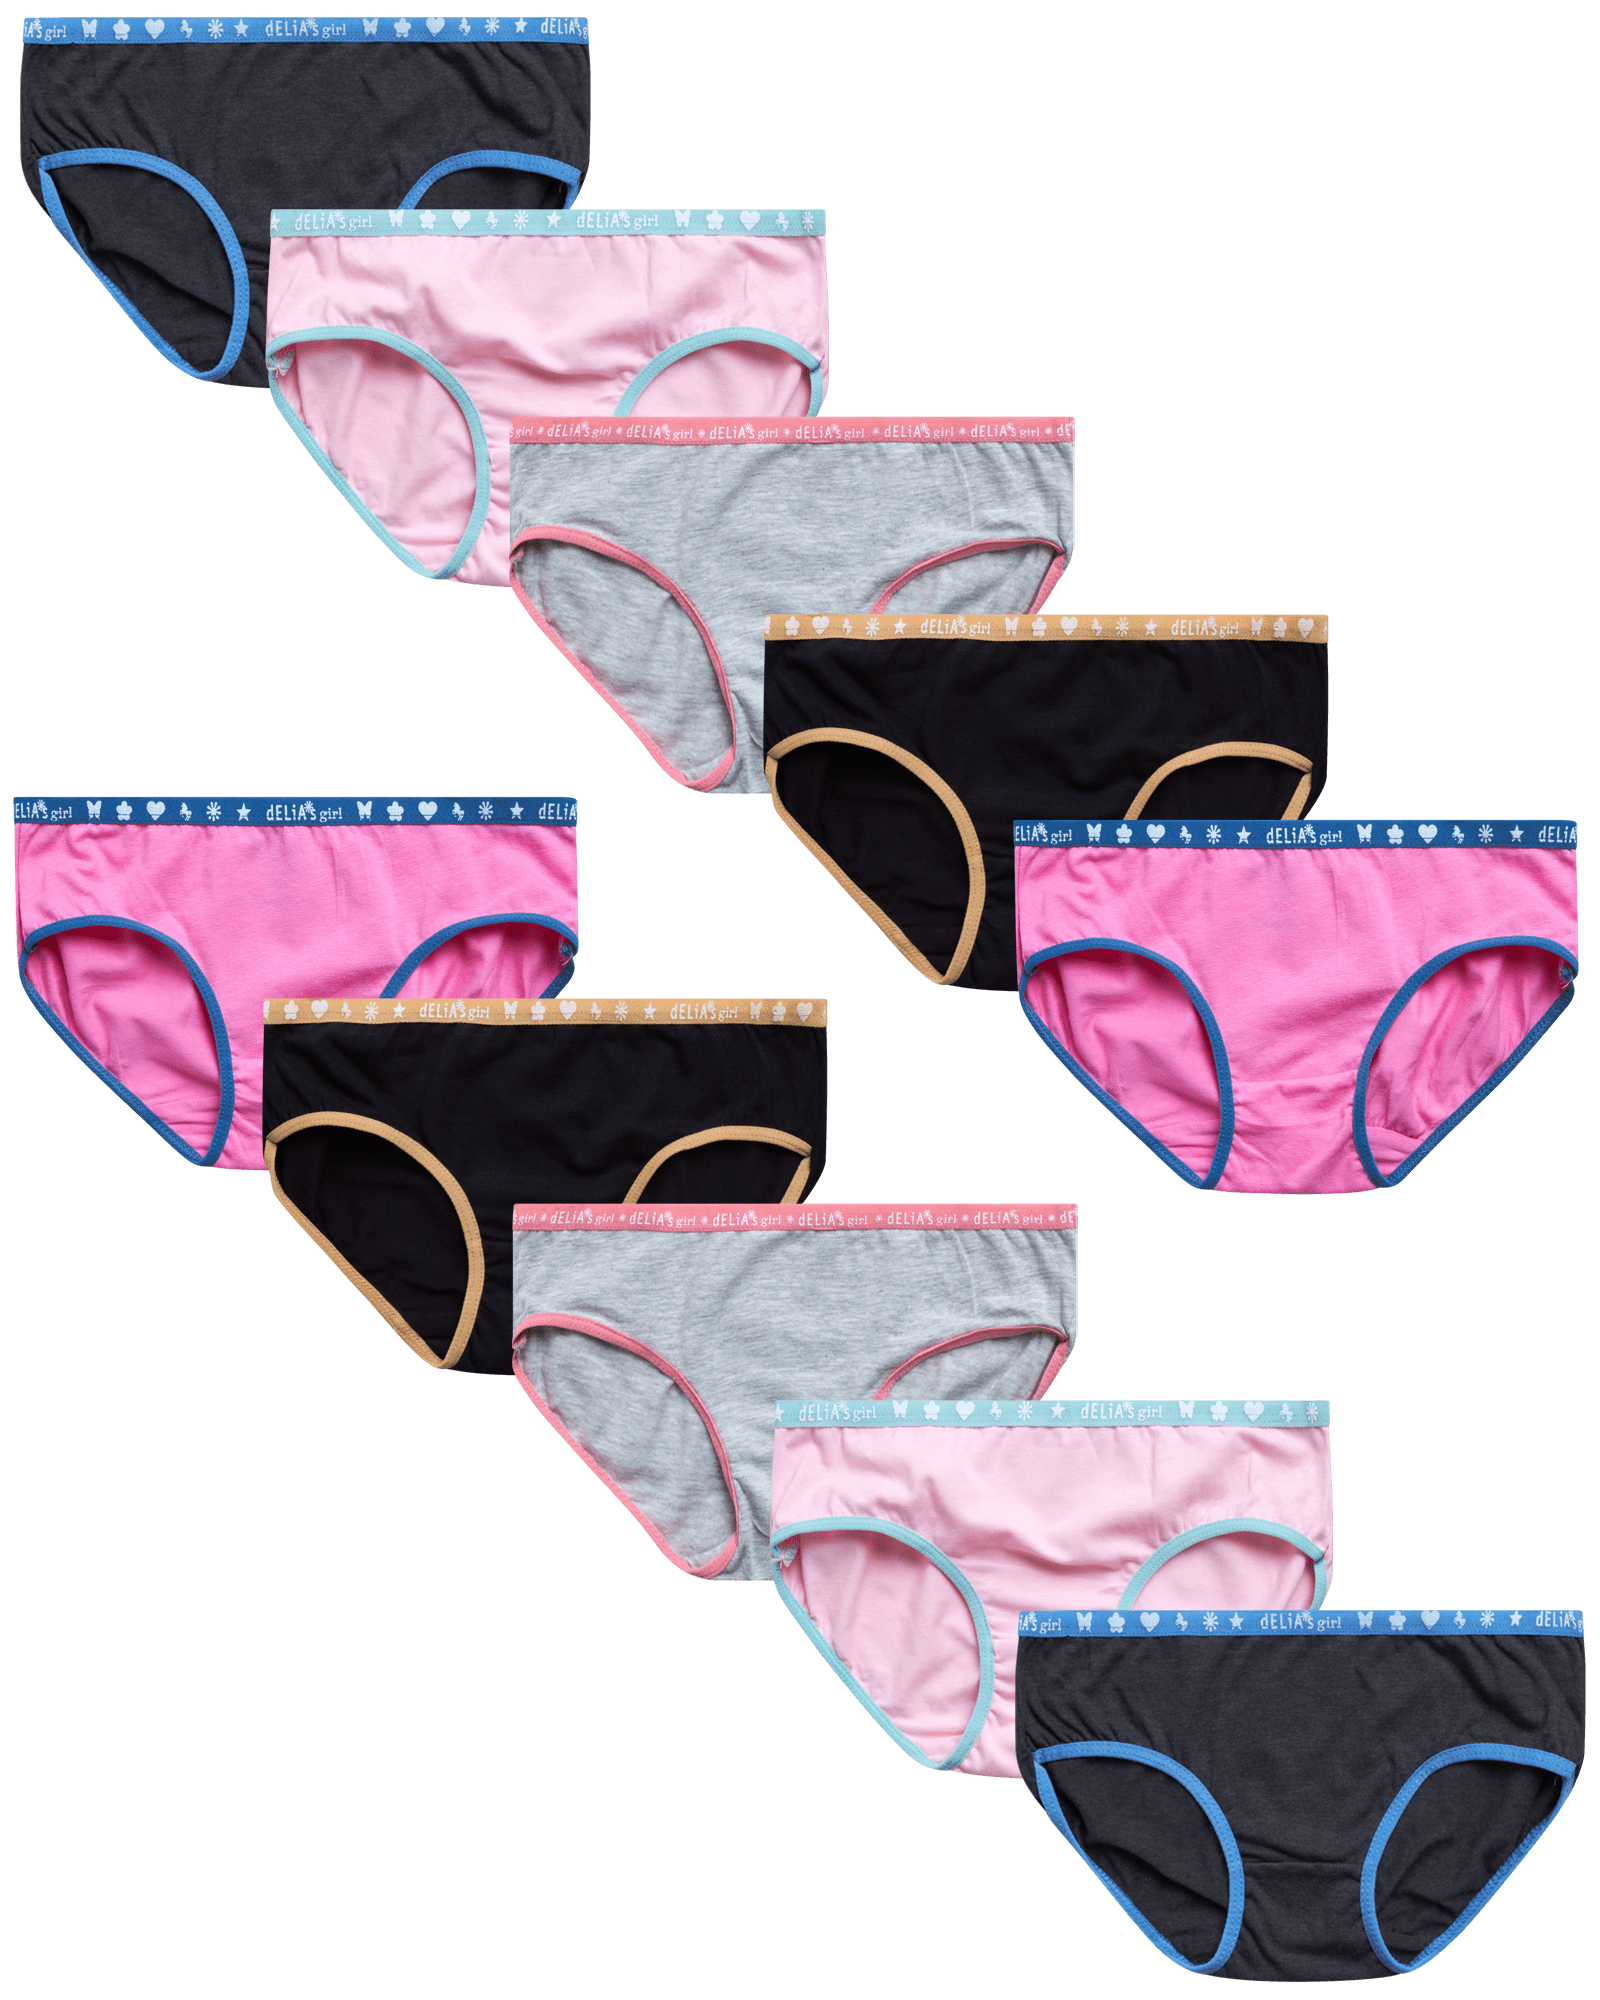 dELiA*s Girls' Underwear – 10 Pack Stretch Cotton Briefs Panties